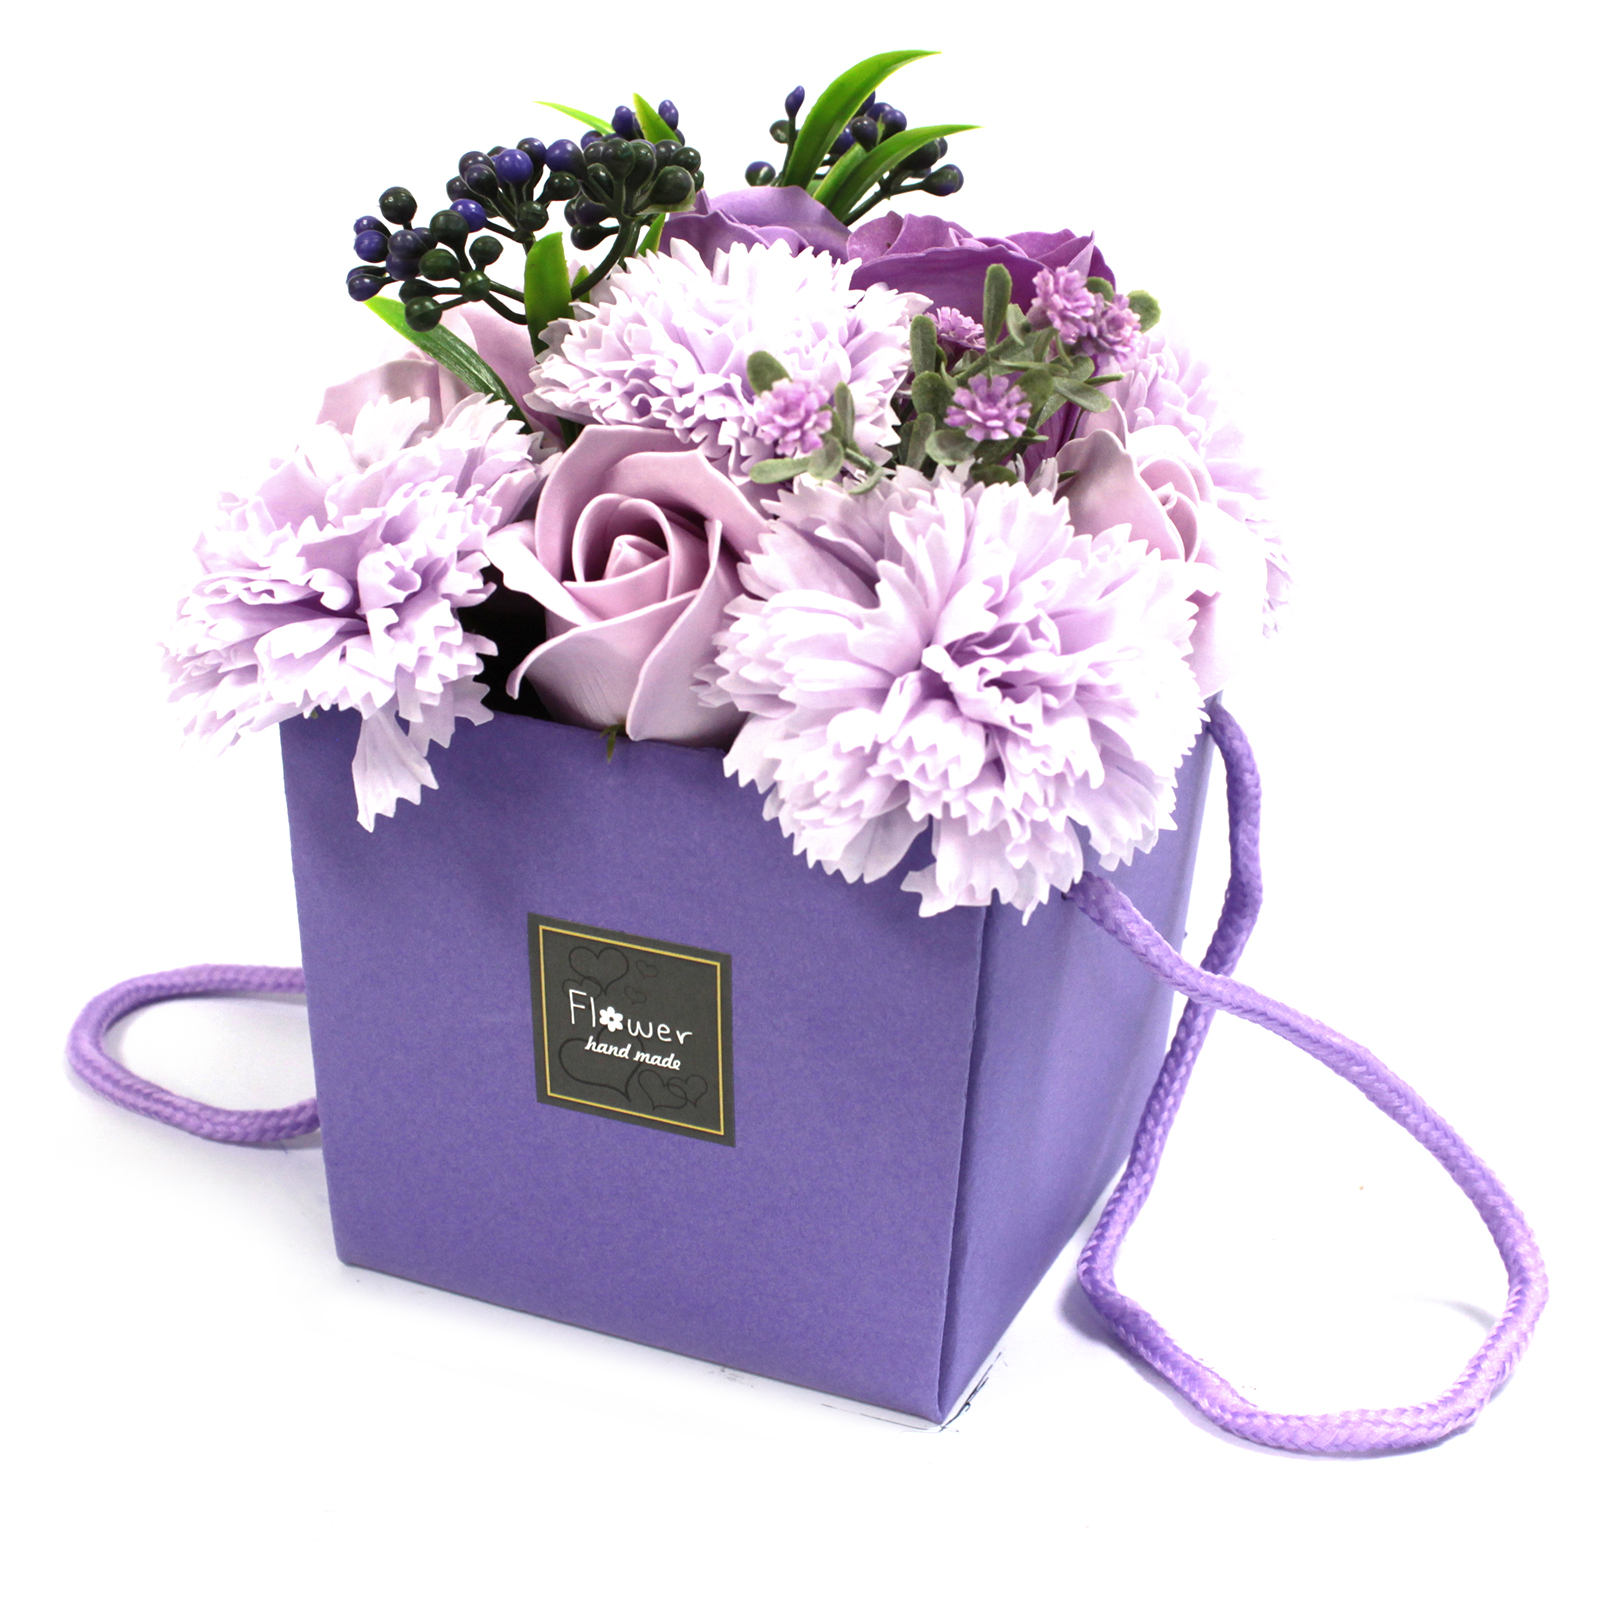 1x Soap Flower Bouqet - Lavender Rose & Carnation